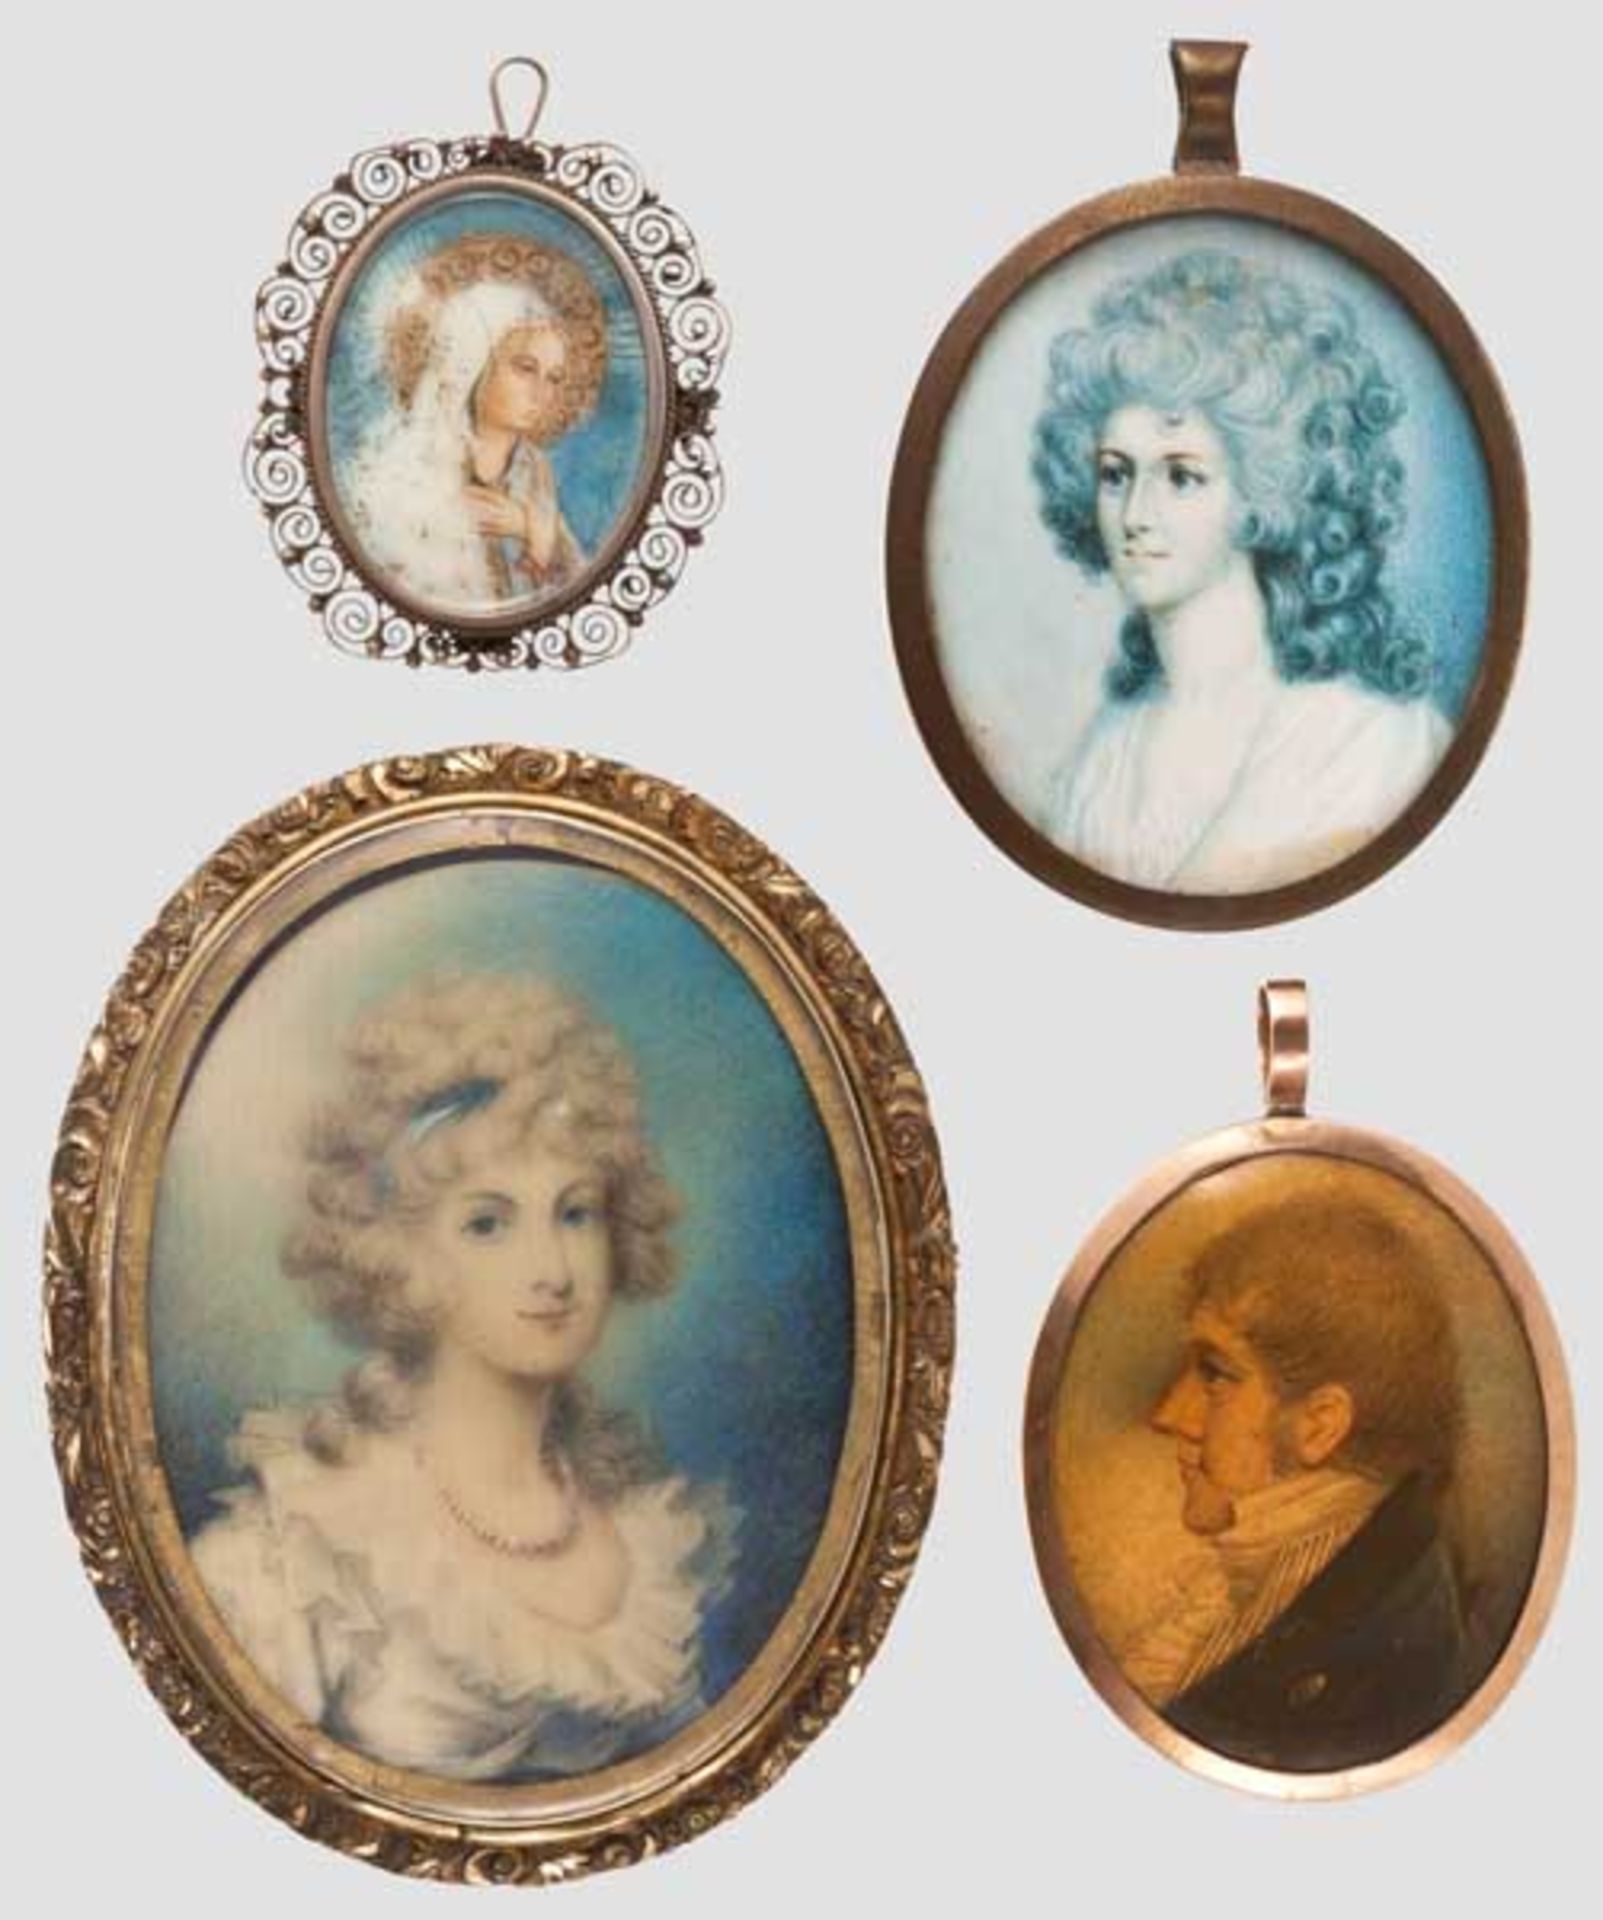 Vier Portrait-Miniaturen, 19. Jhdt. Auf Elfenbein bzw. Papier gemalte ovale Miniaturen unter Glas